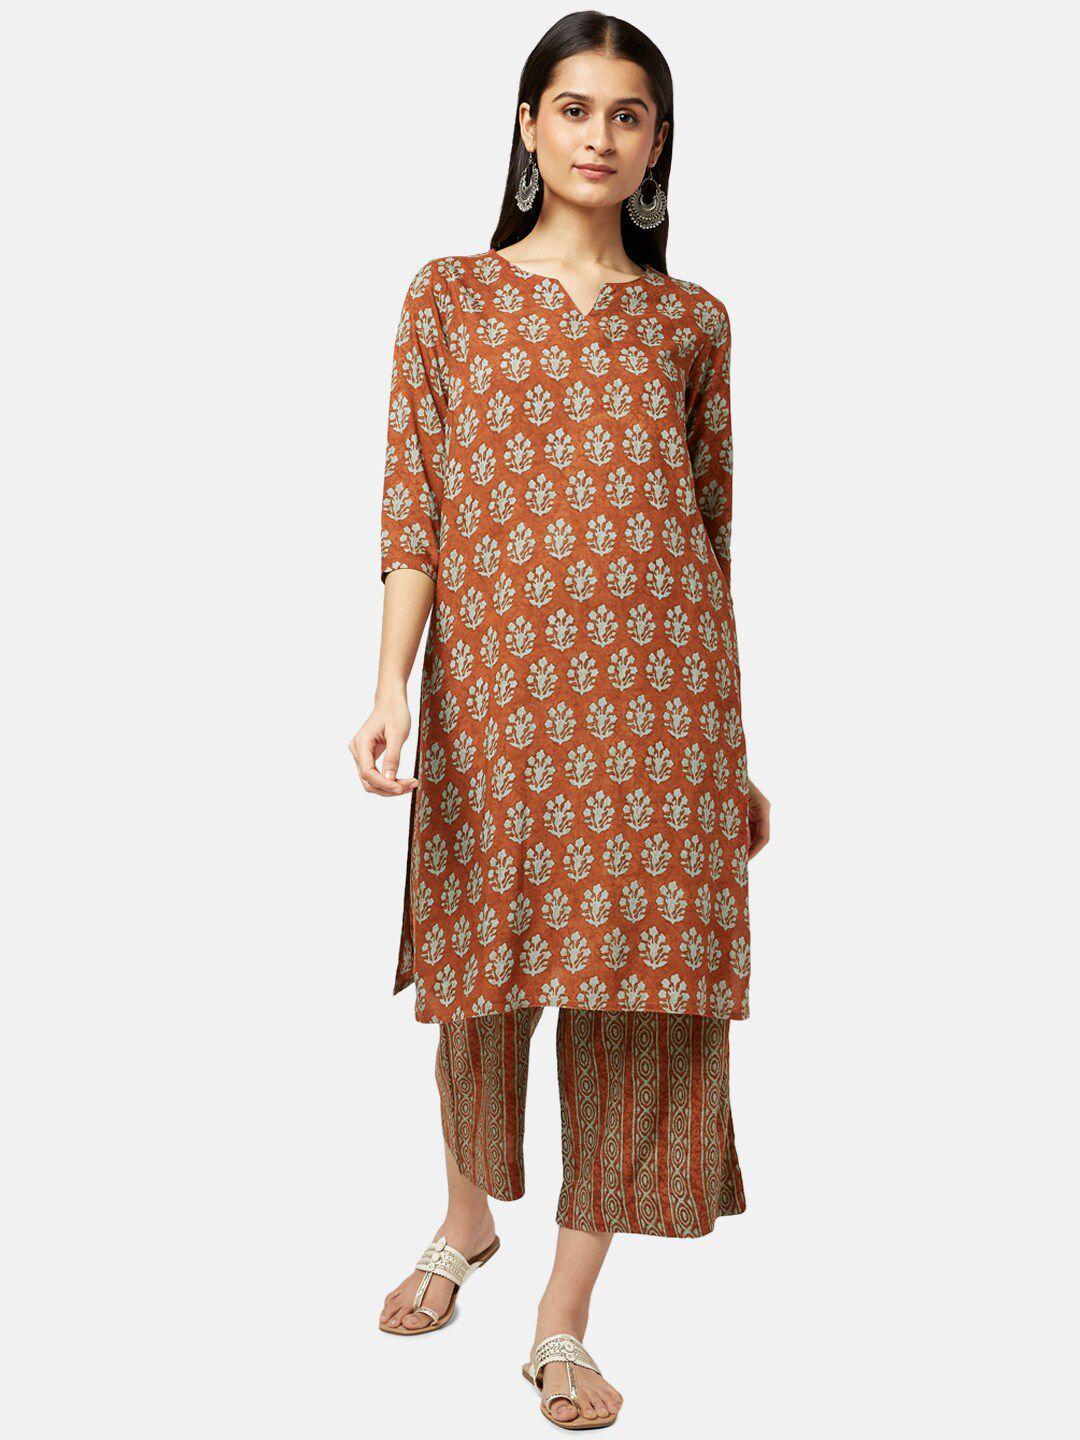 rangmanch by pantaloons women brown floral printed kurta with palazzos